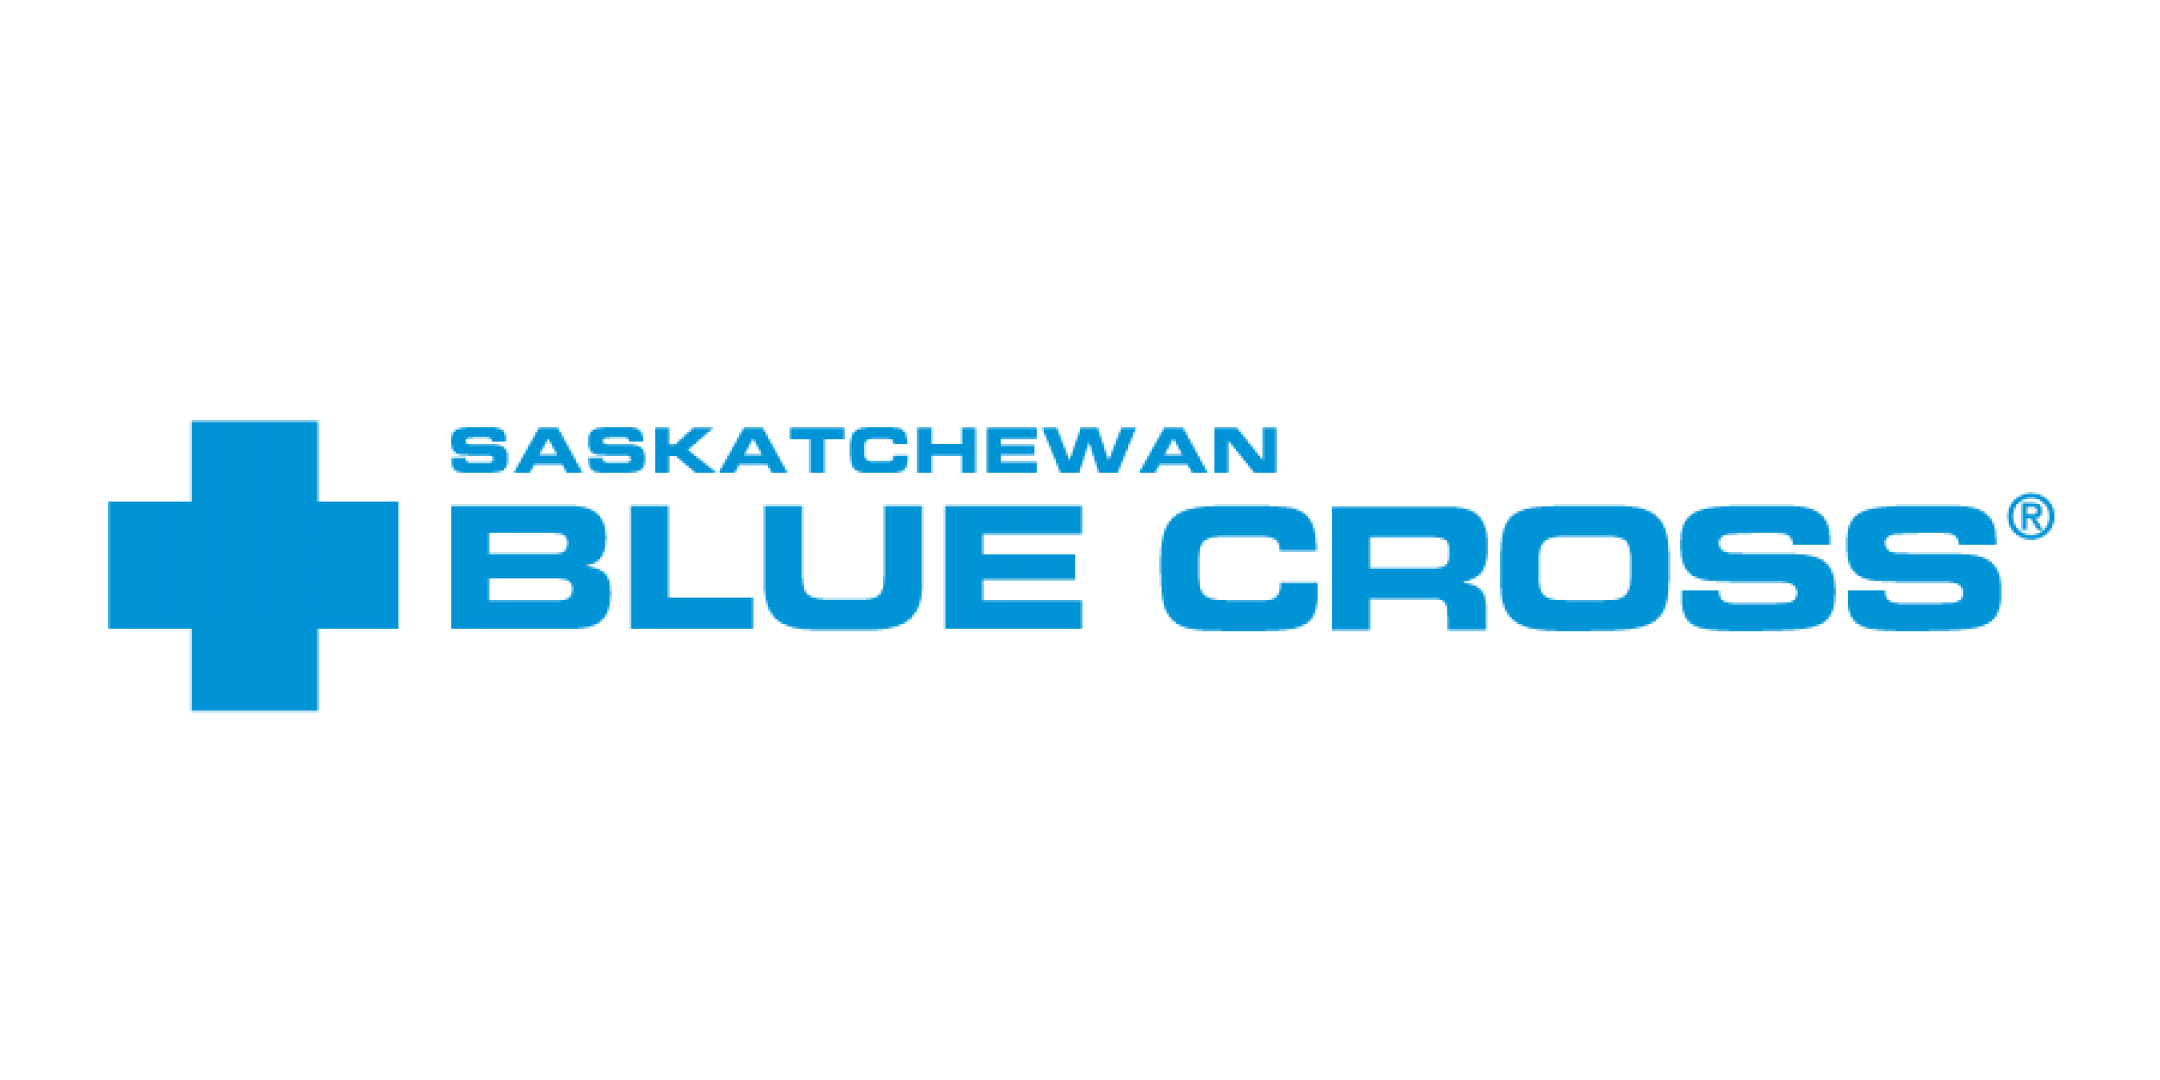 Saskatchewan Blue Cross